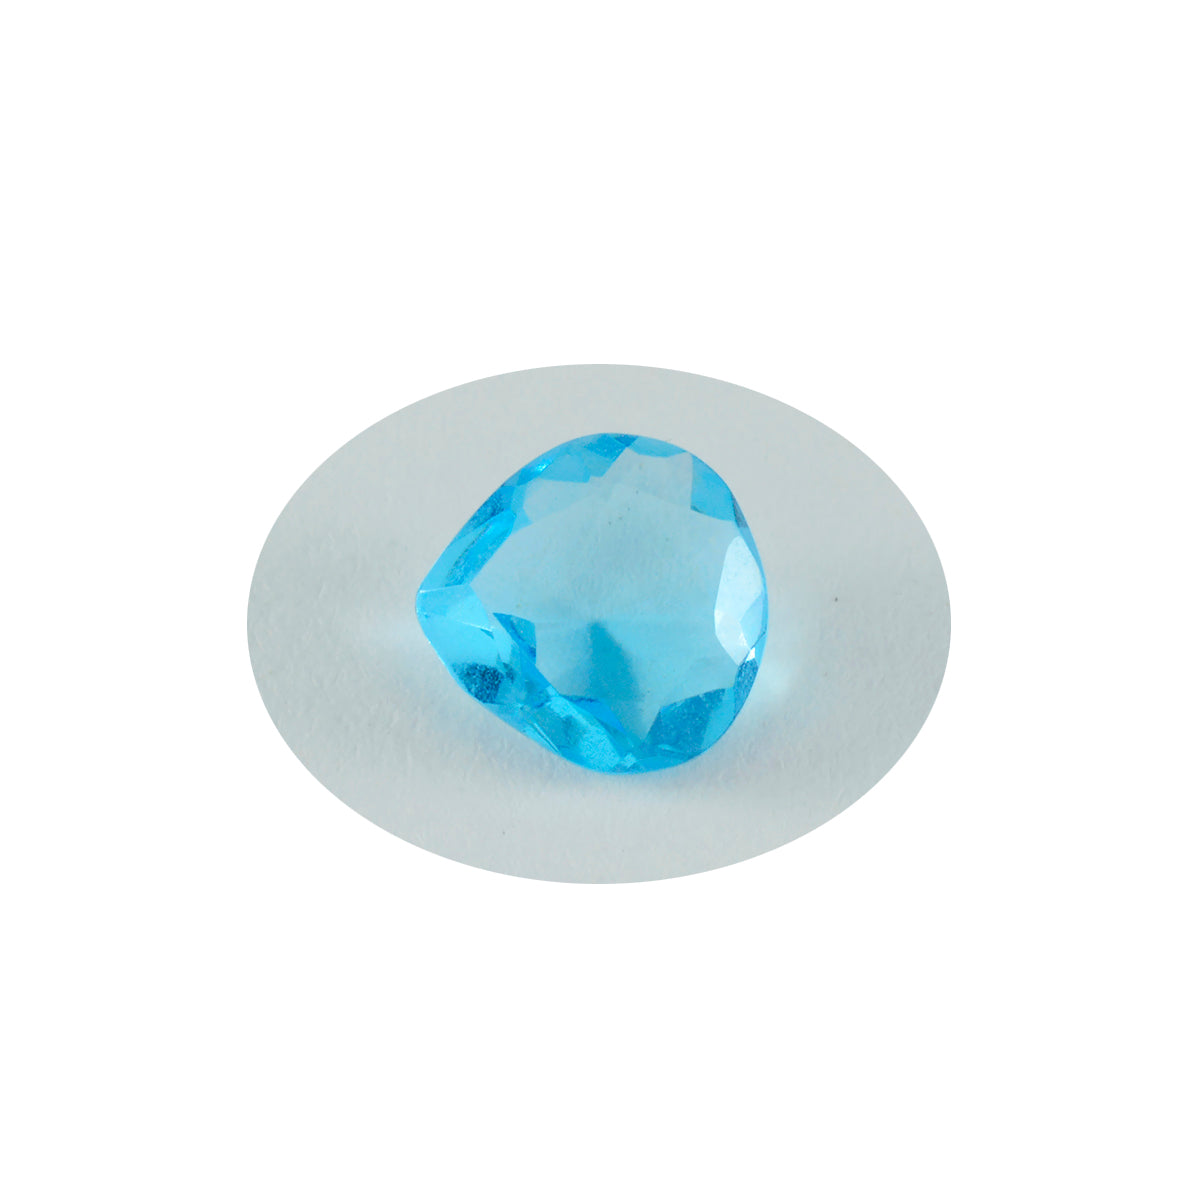 riyogems 1шт синий топаз cz ограненный 12x12 мм драгоценные камни в форме сердца отличного качества